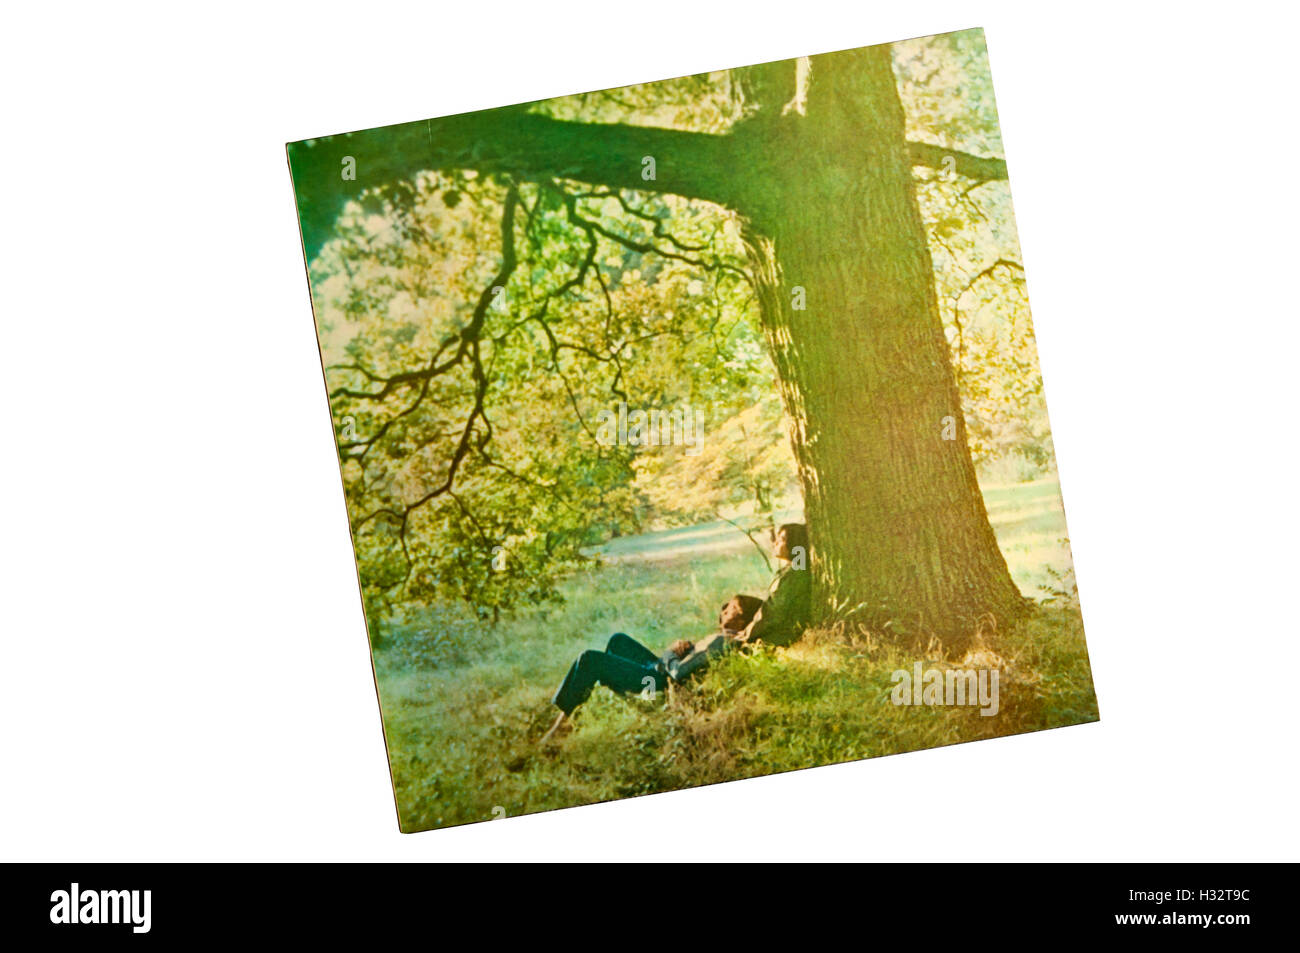 John Lennon/Plastic Ono Band war das Debüt-Solo-Album von englischen Rock-Musiker John Lennon. Es wurde im Jahr 1970 veröffentlicht. Stockfoto